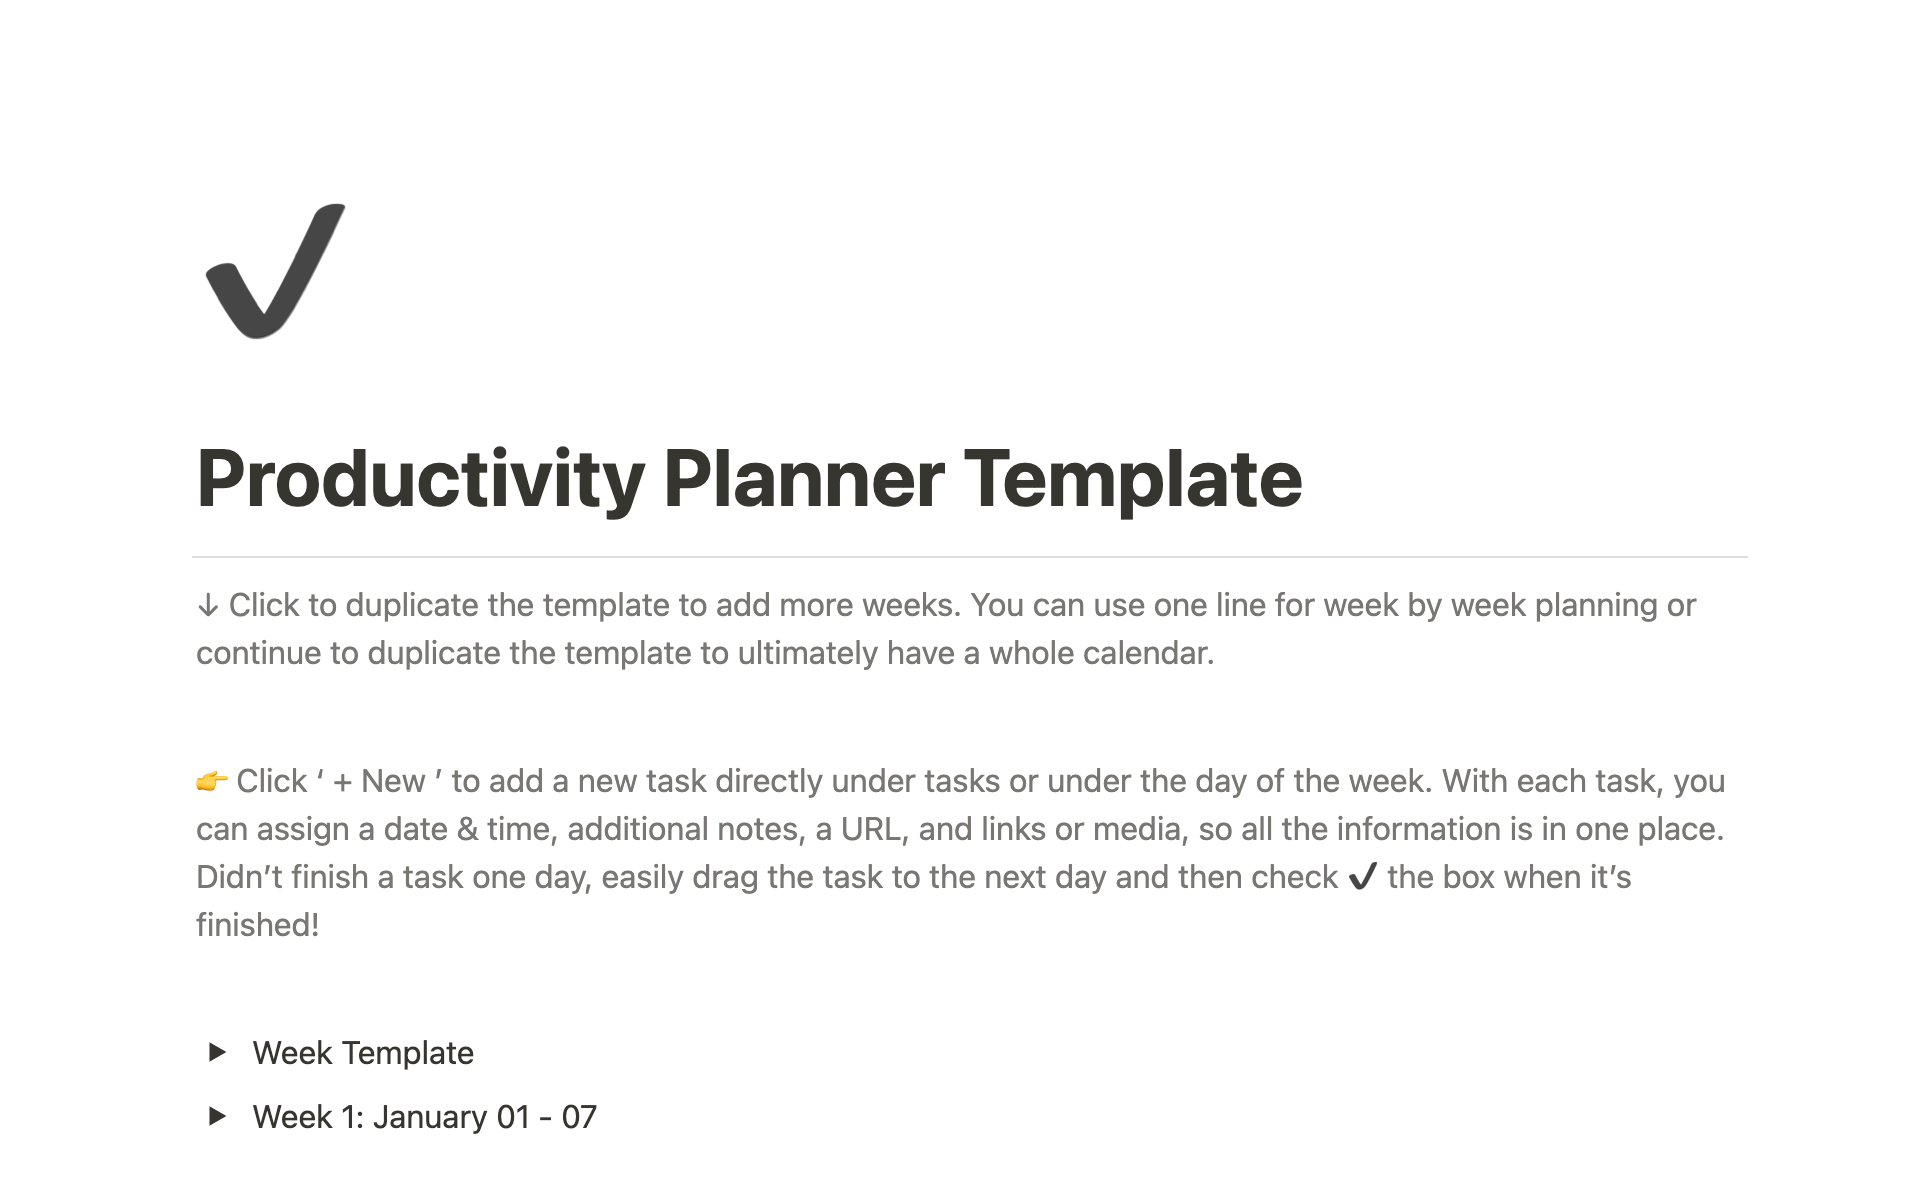 Uma prévia do modelo para Productivity Planner